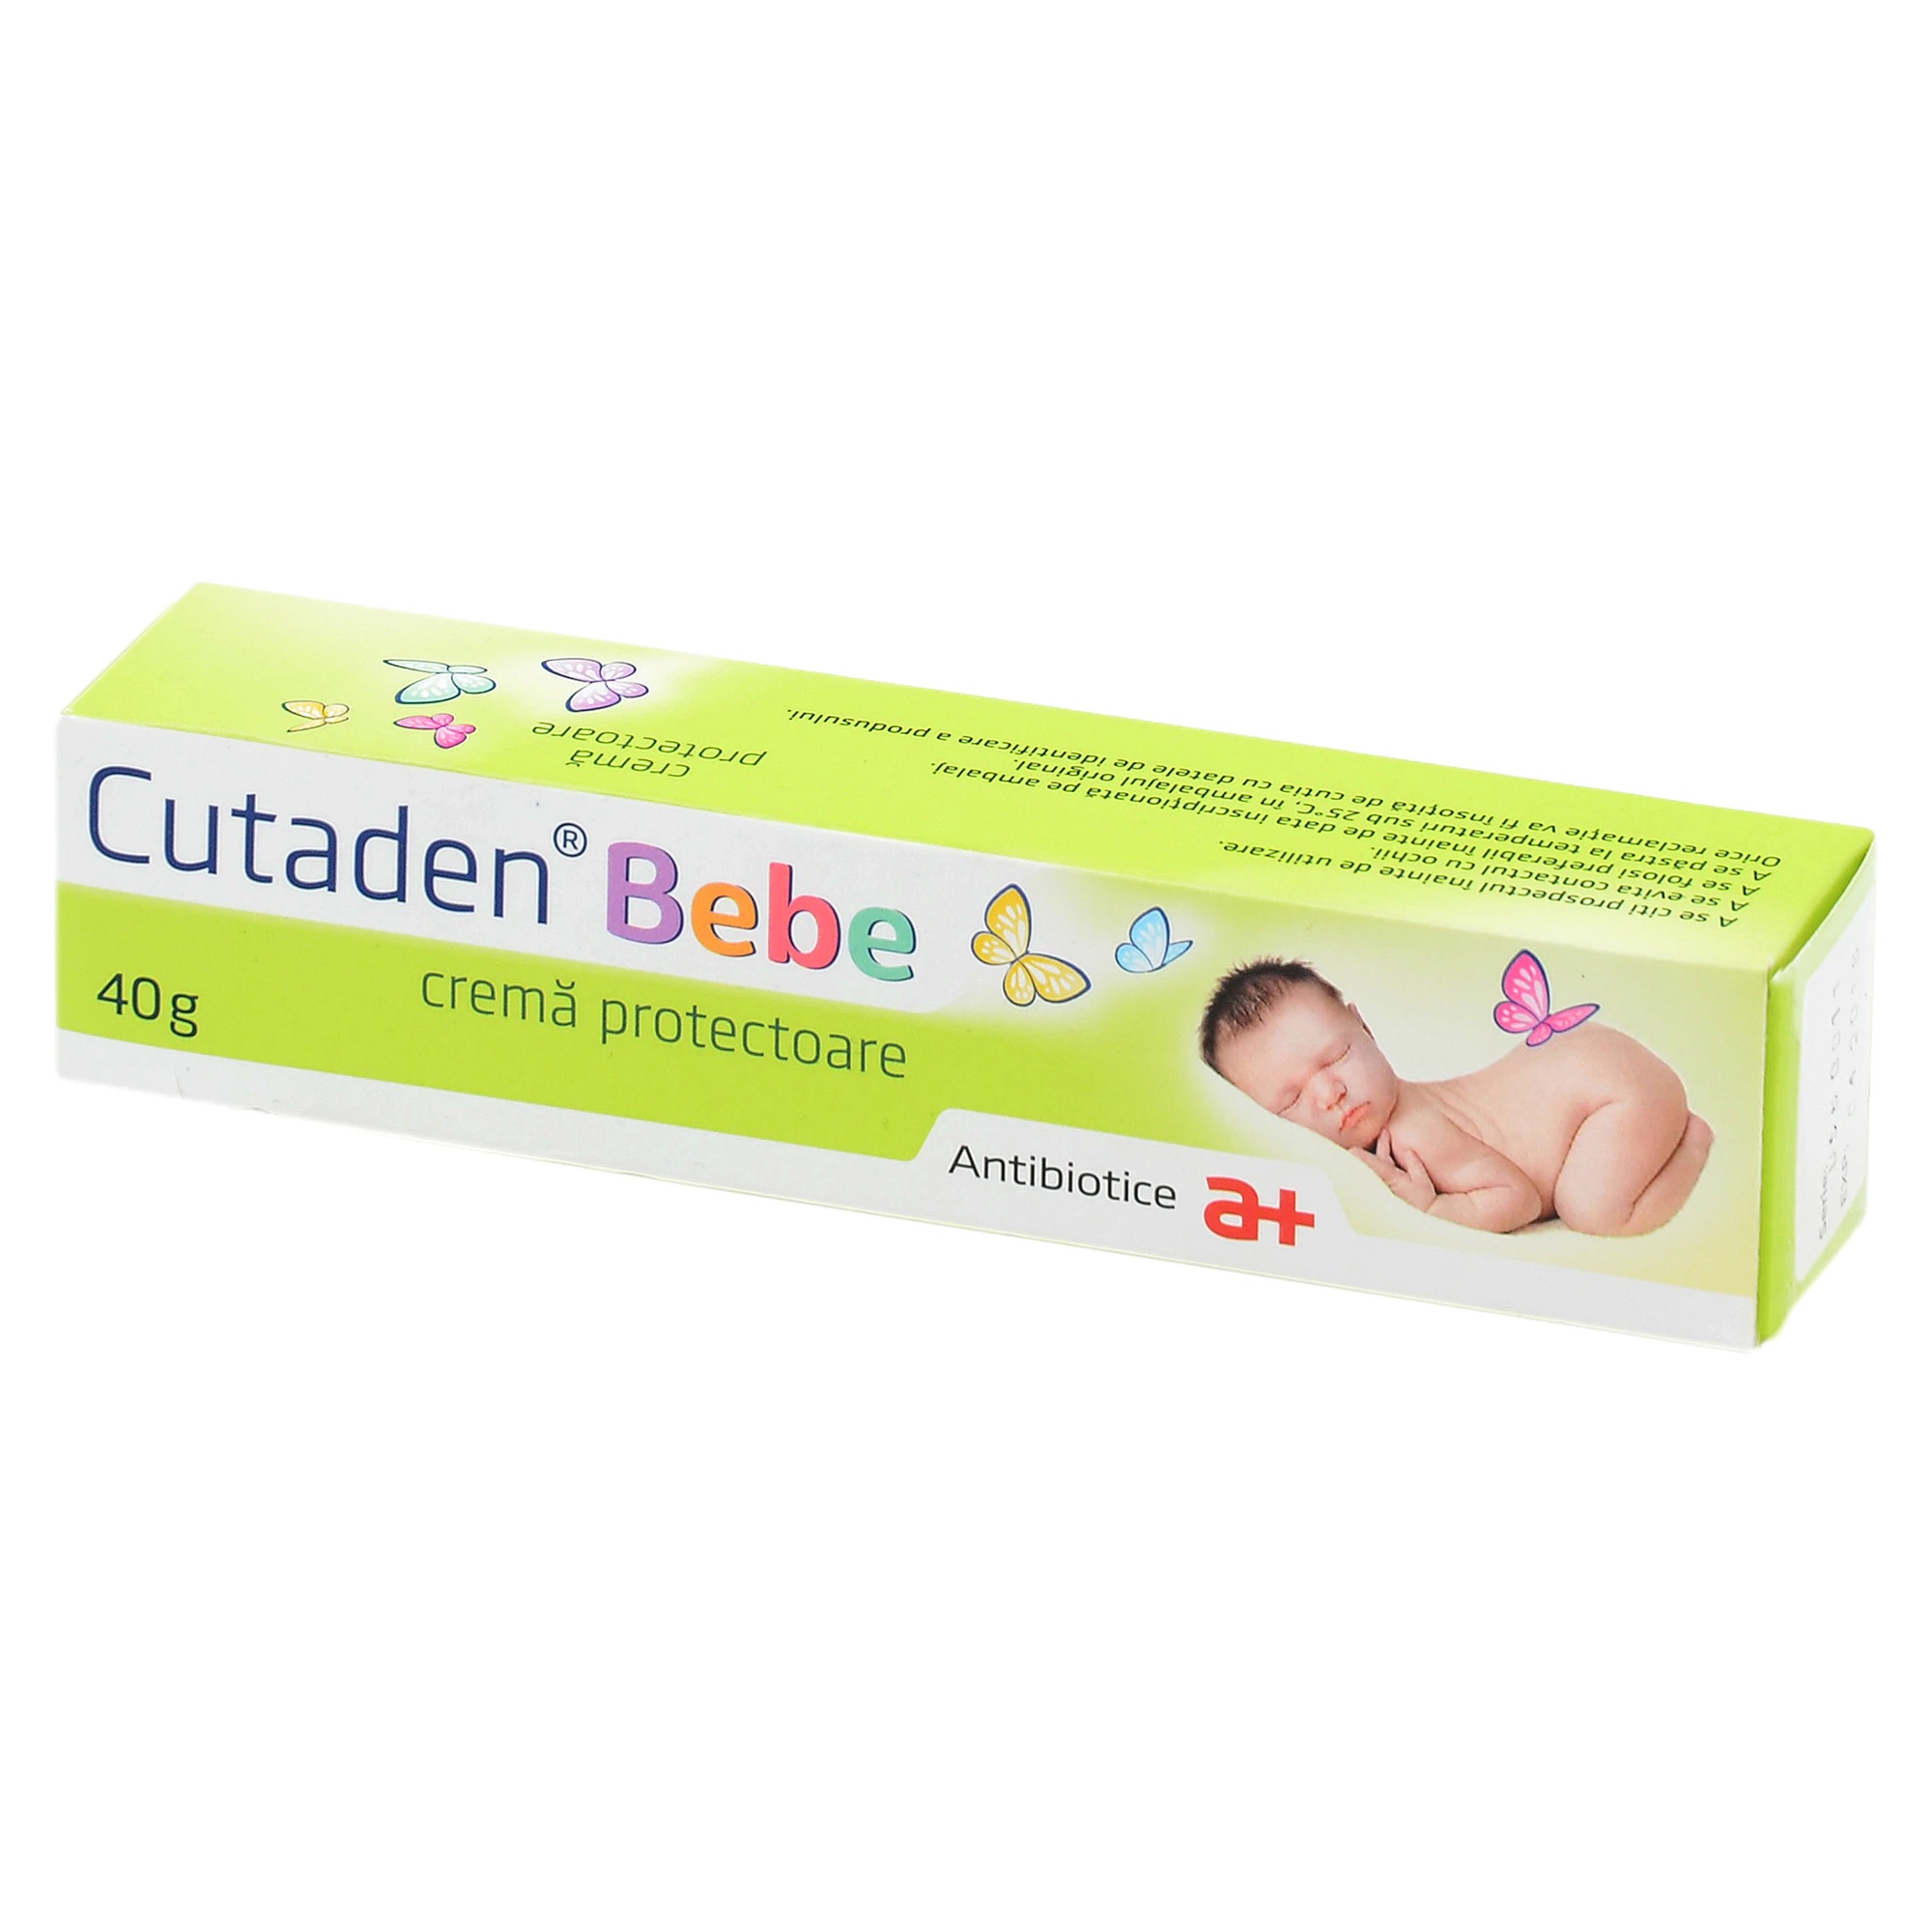 Cutaden bebe cr protectoare, 40g, Antibiotice